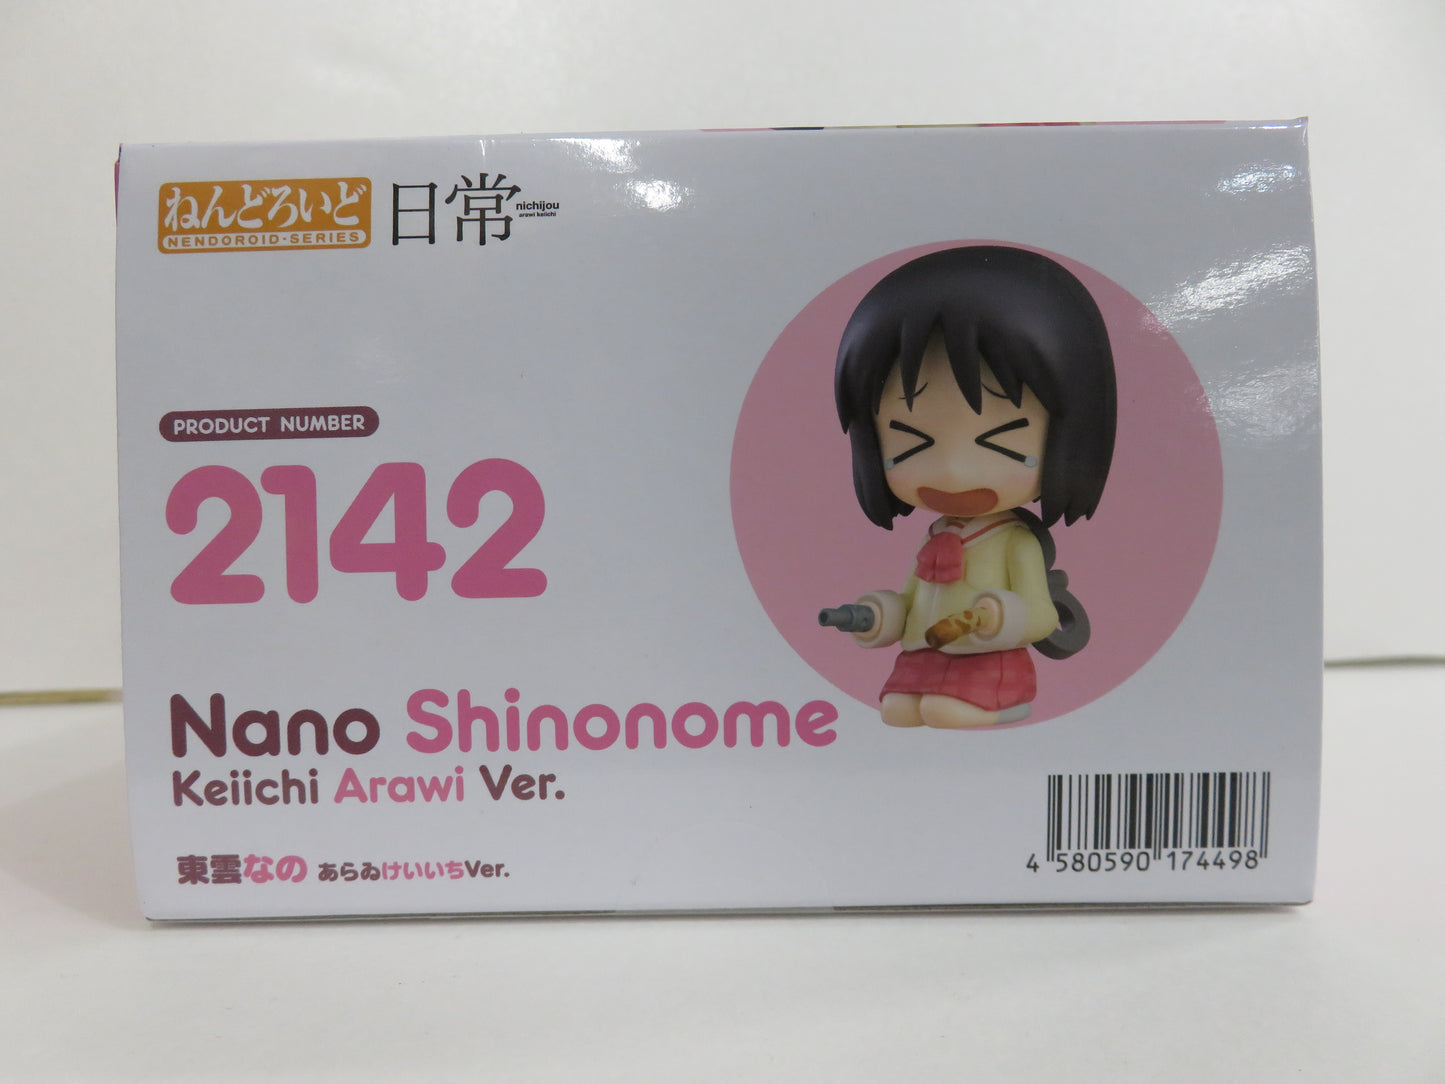 Nendoroid Nr. 2142 Shinonome Nano Araikeiichi Ver. (Täglich)